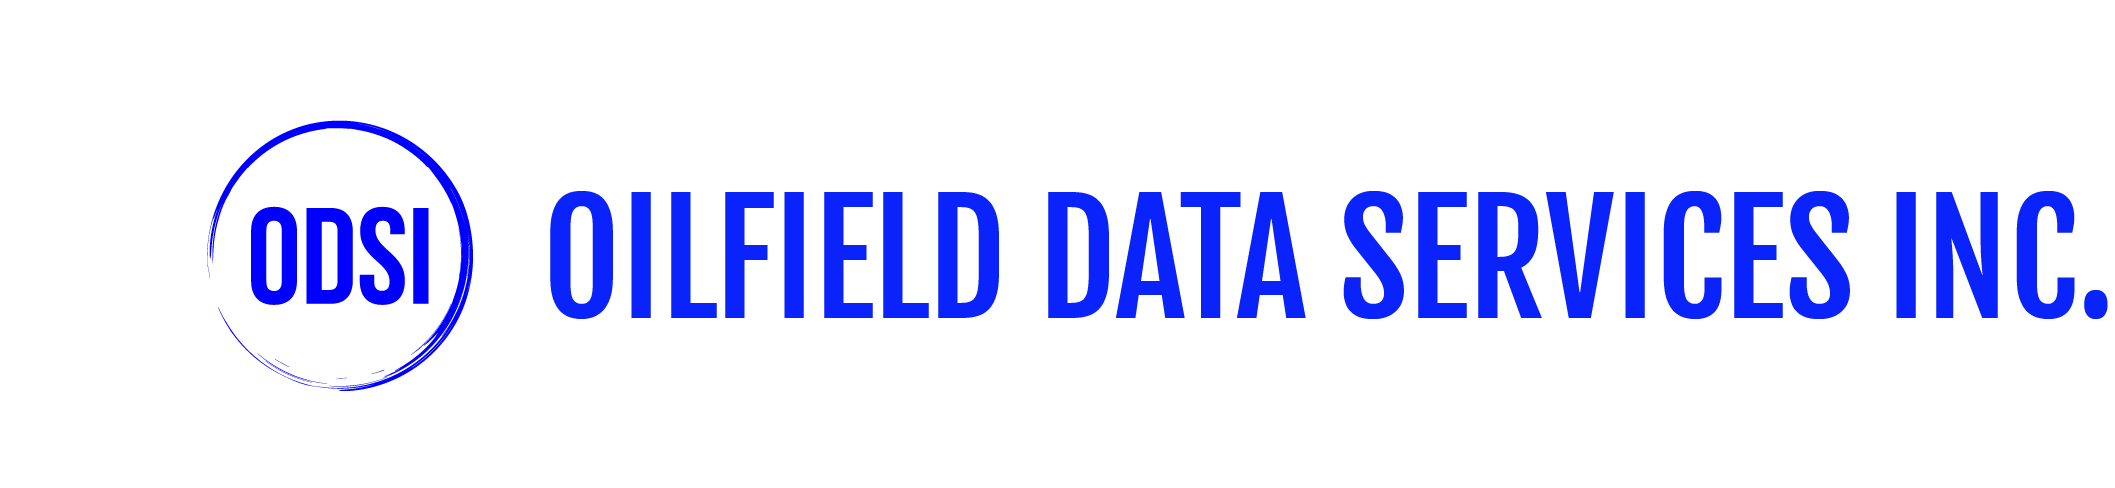 ODSI - Full logo